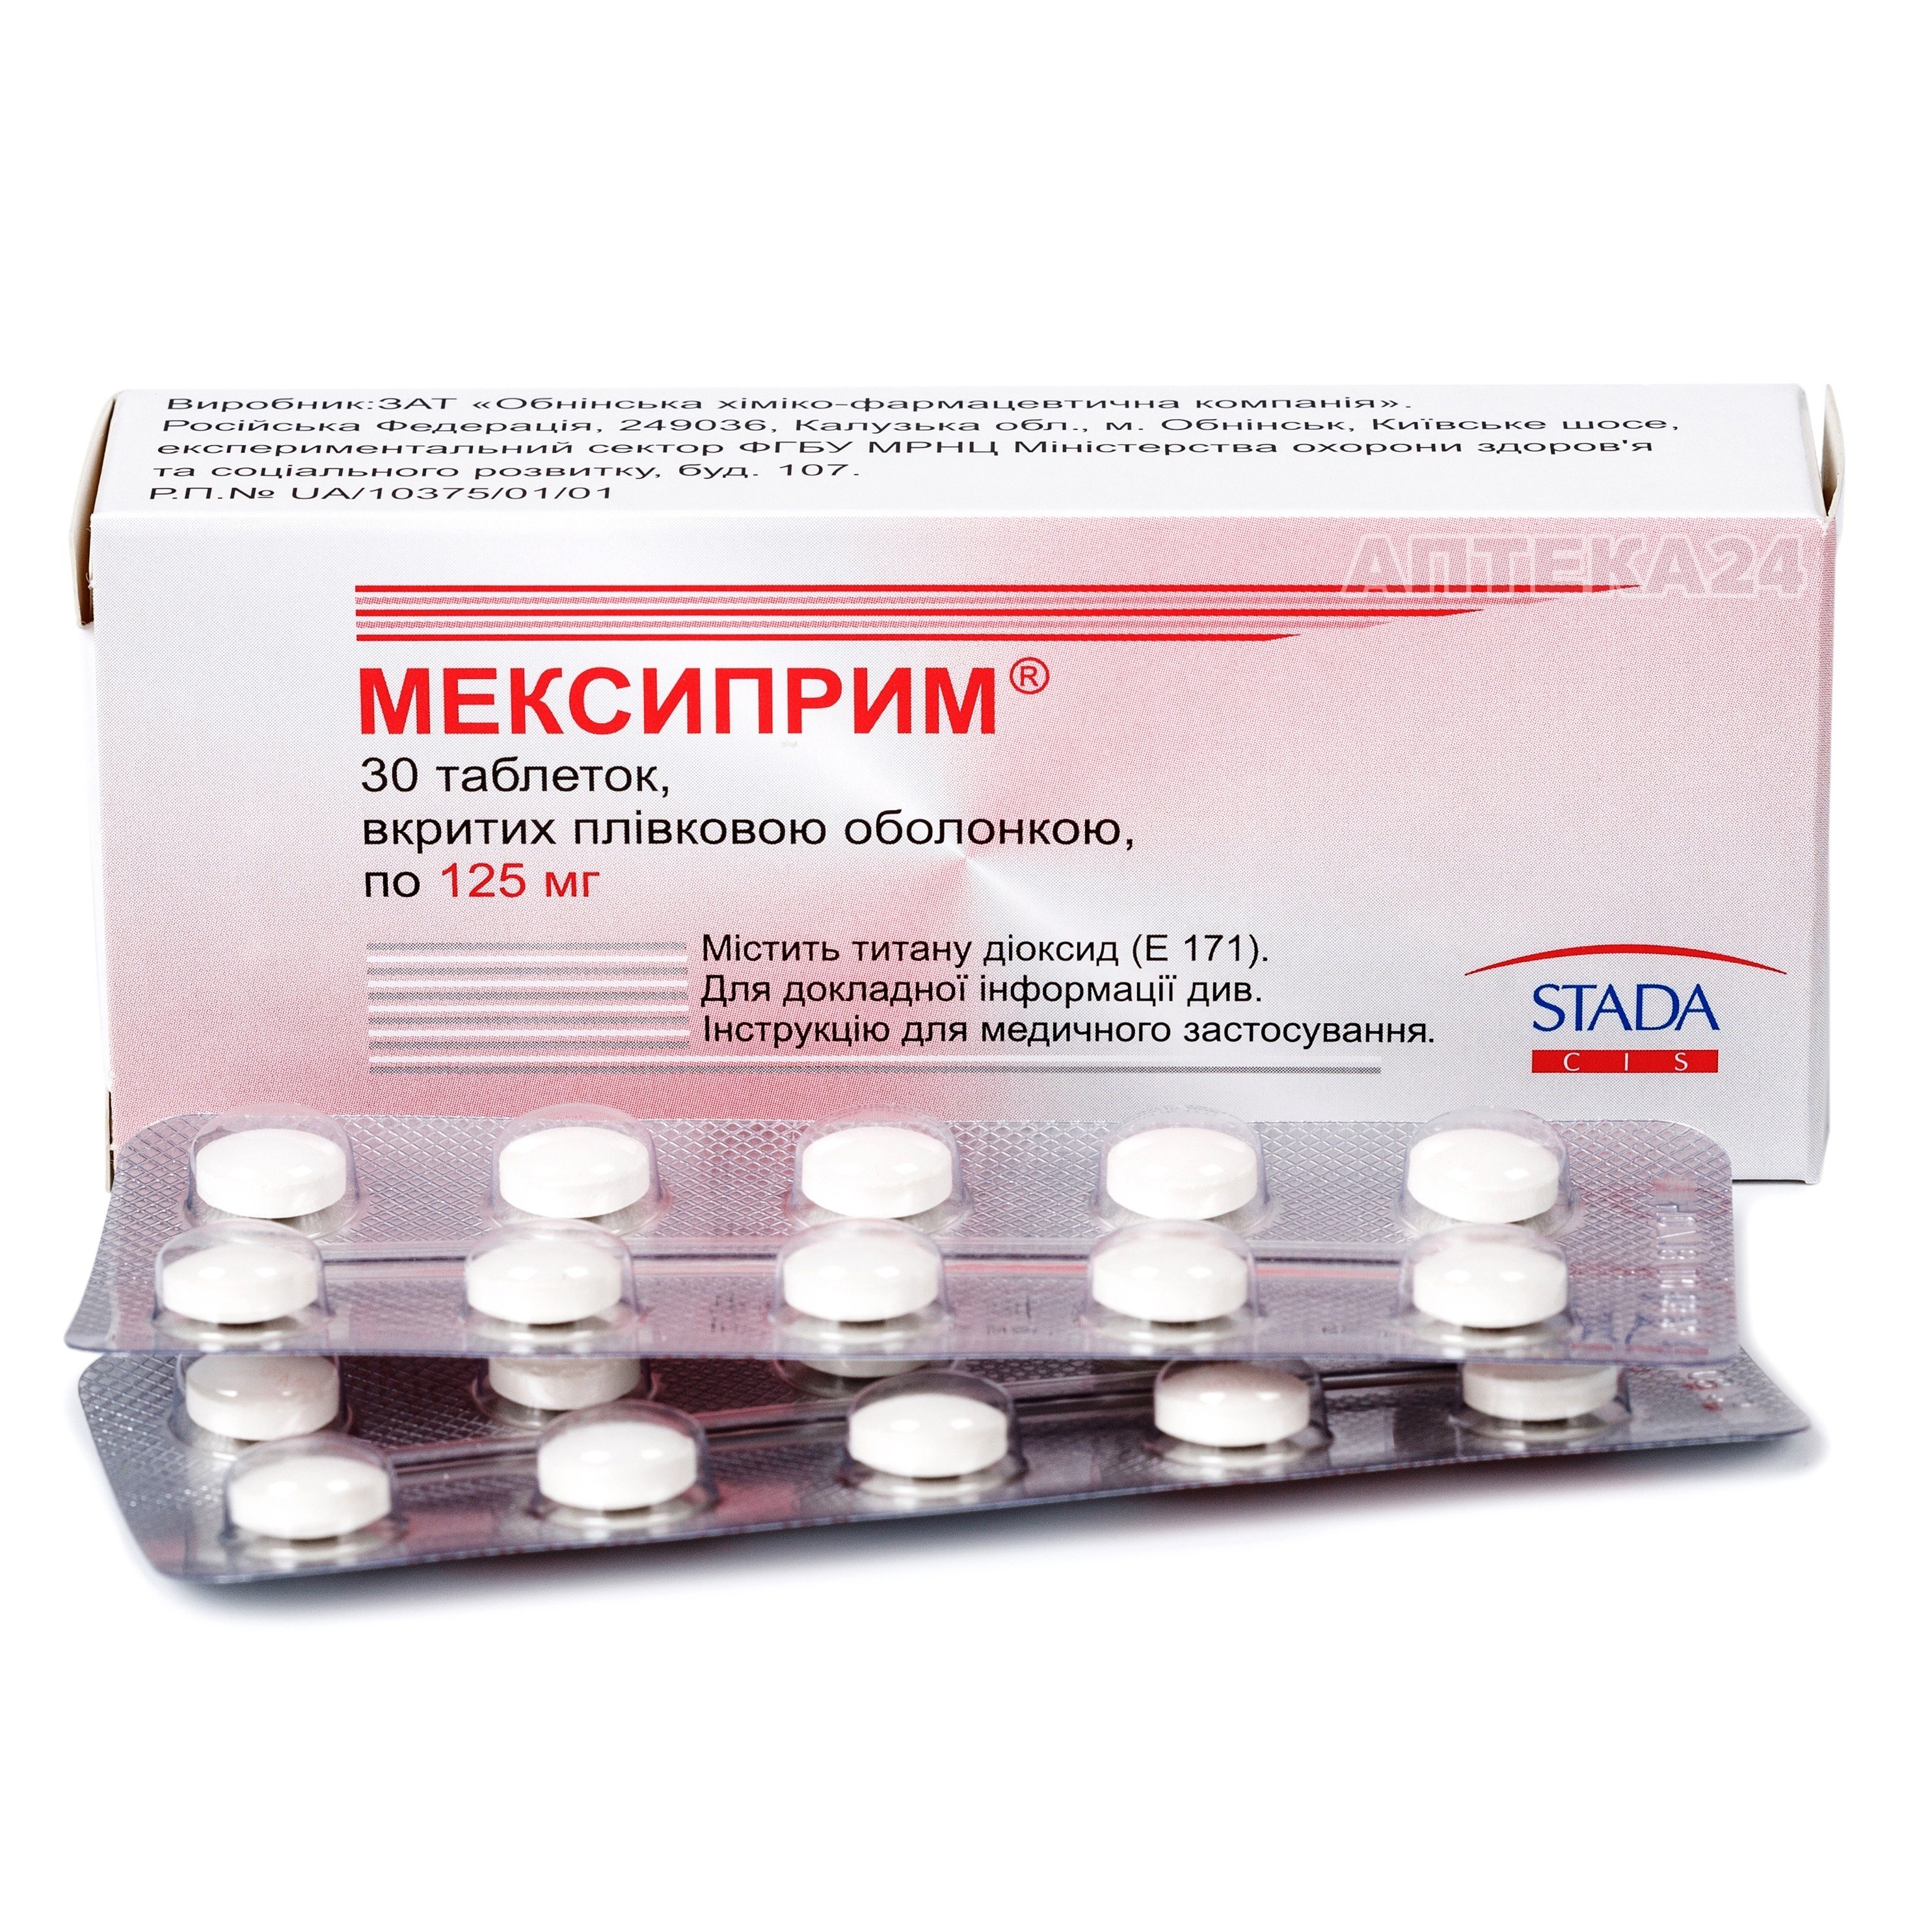 Мексиприм таблетки для нервной системы 125 мг №30: инструкция, цена .